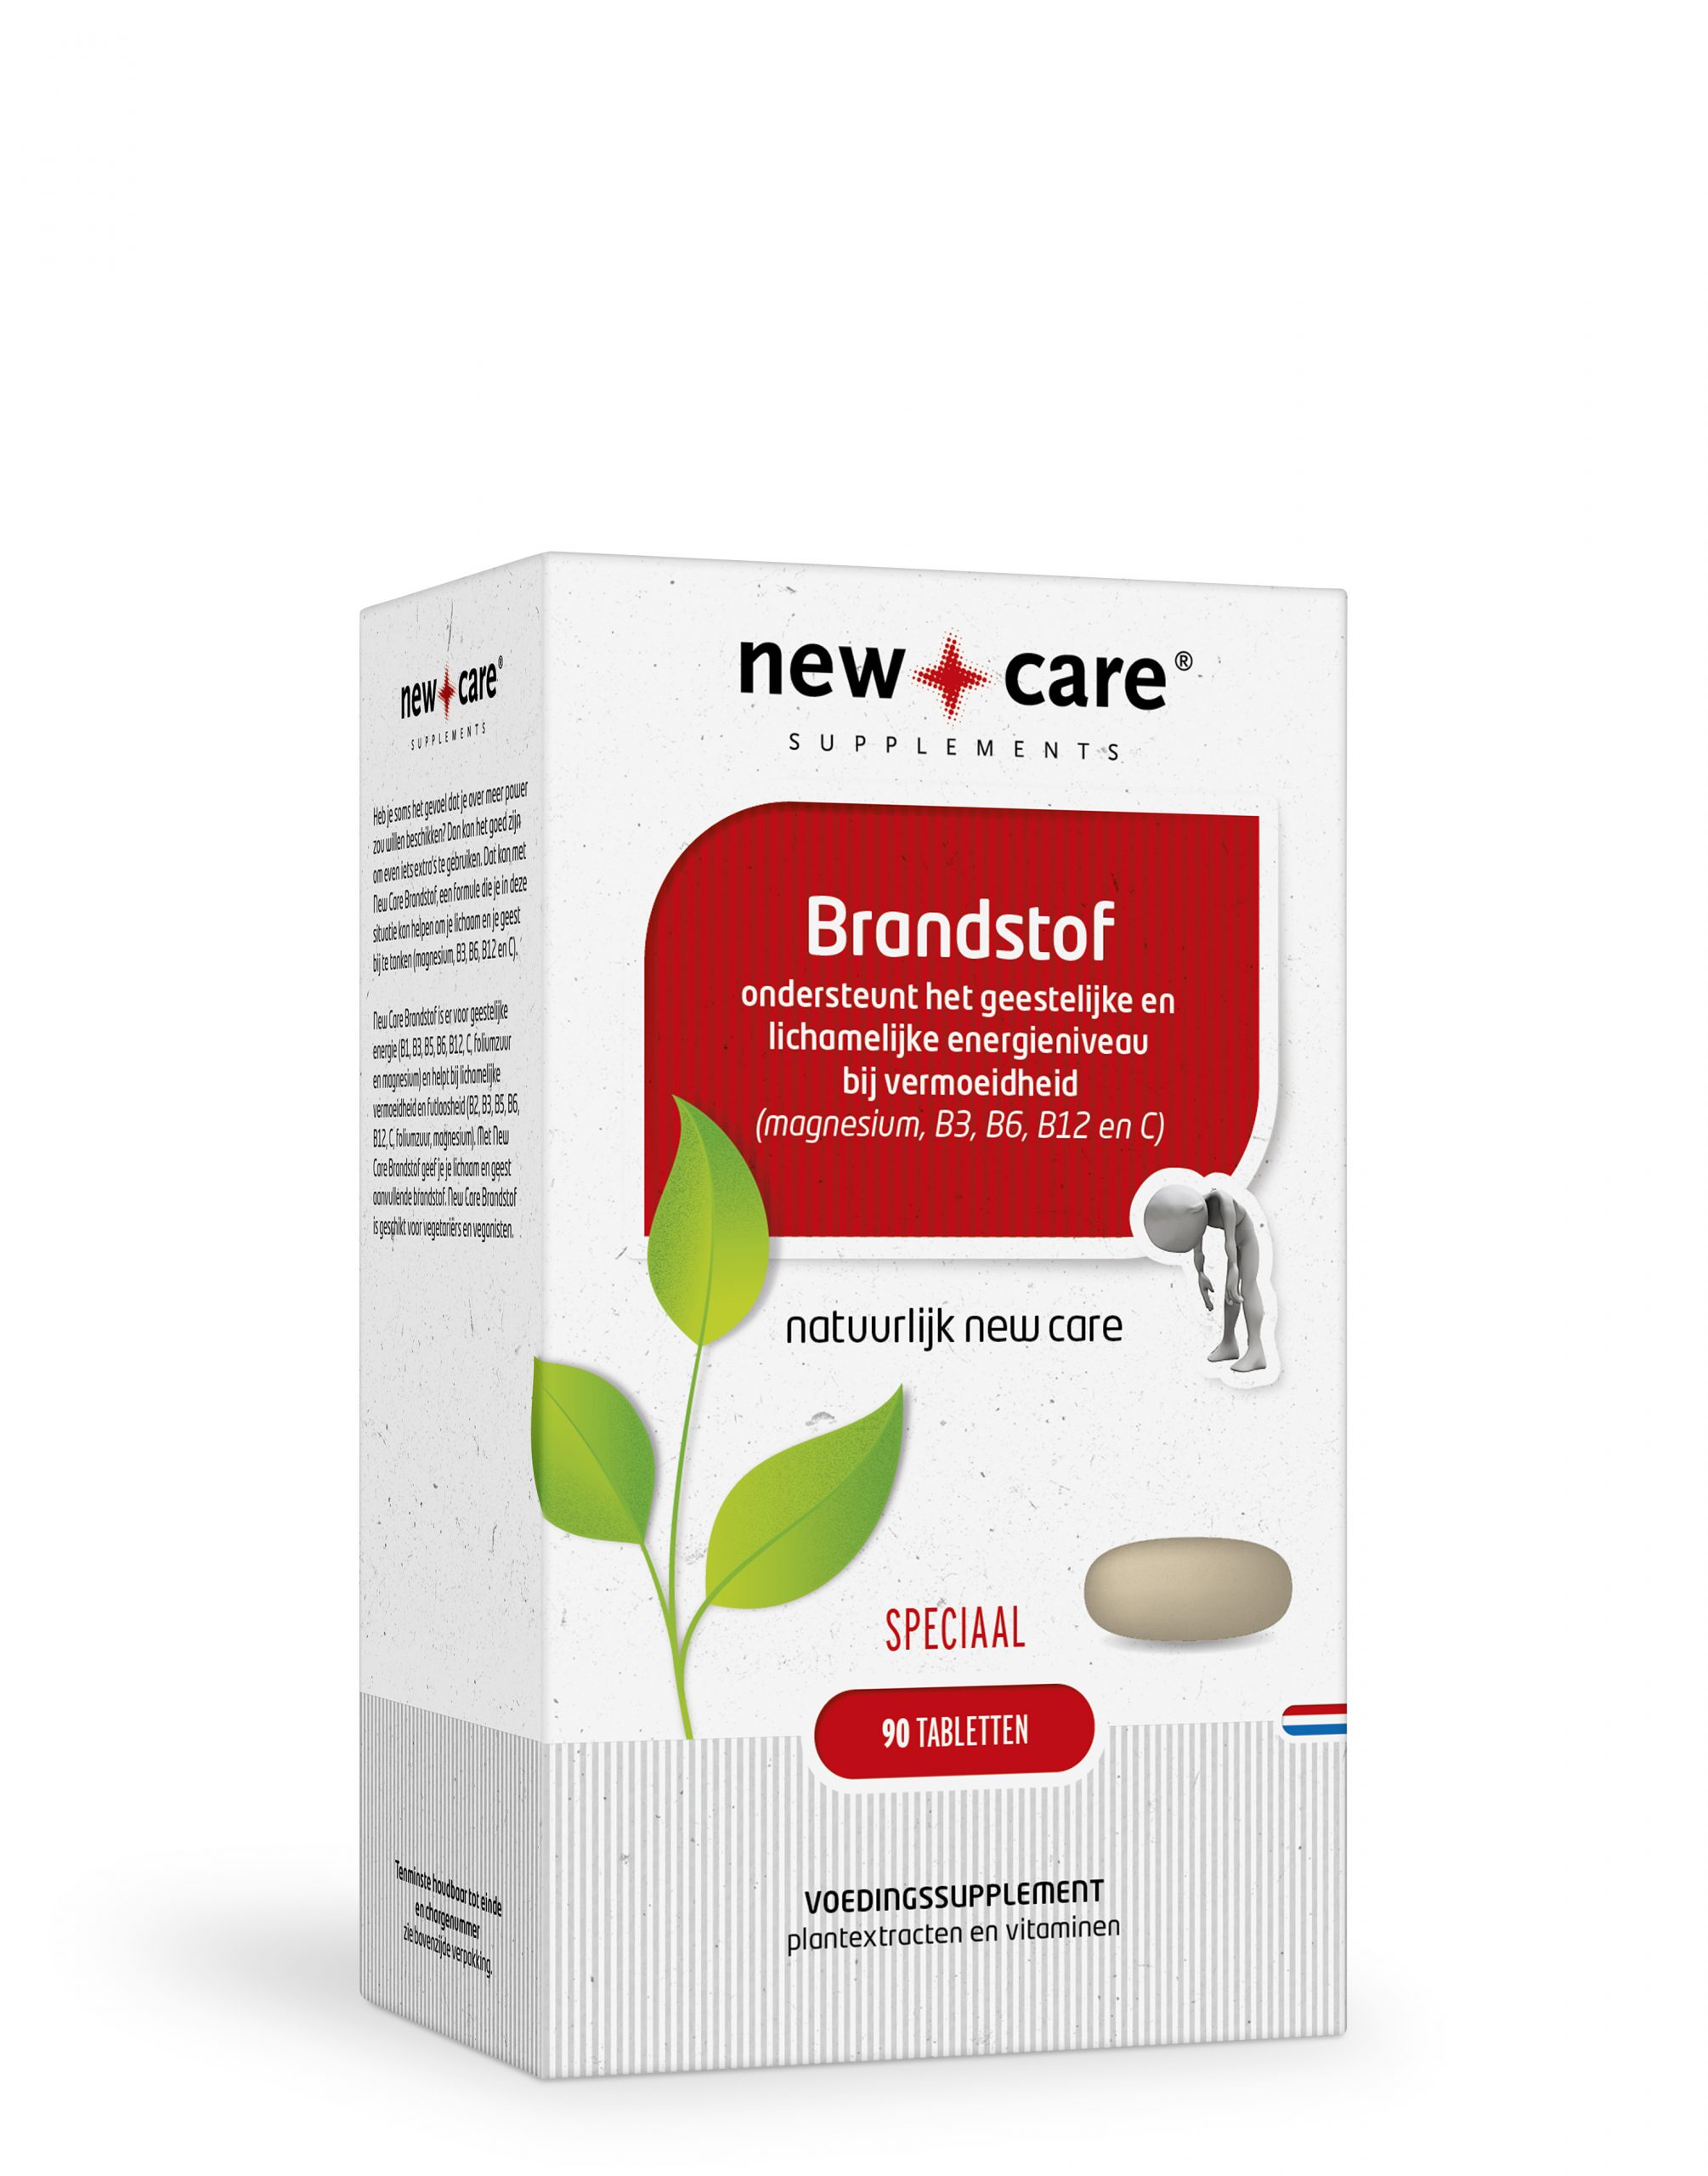 Giftig vonk naakt Brandstof 90 tabletten New Care ⋆ Bik & Bik NL